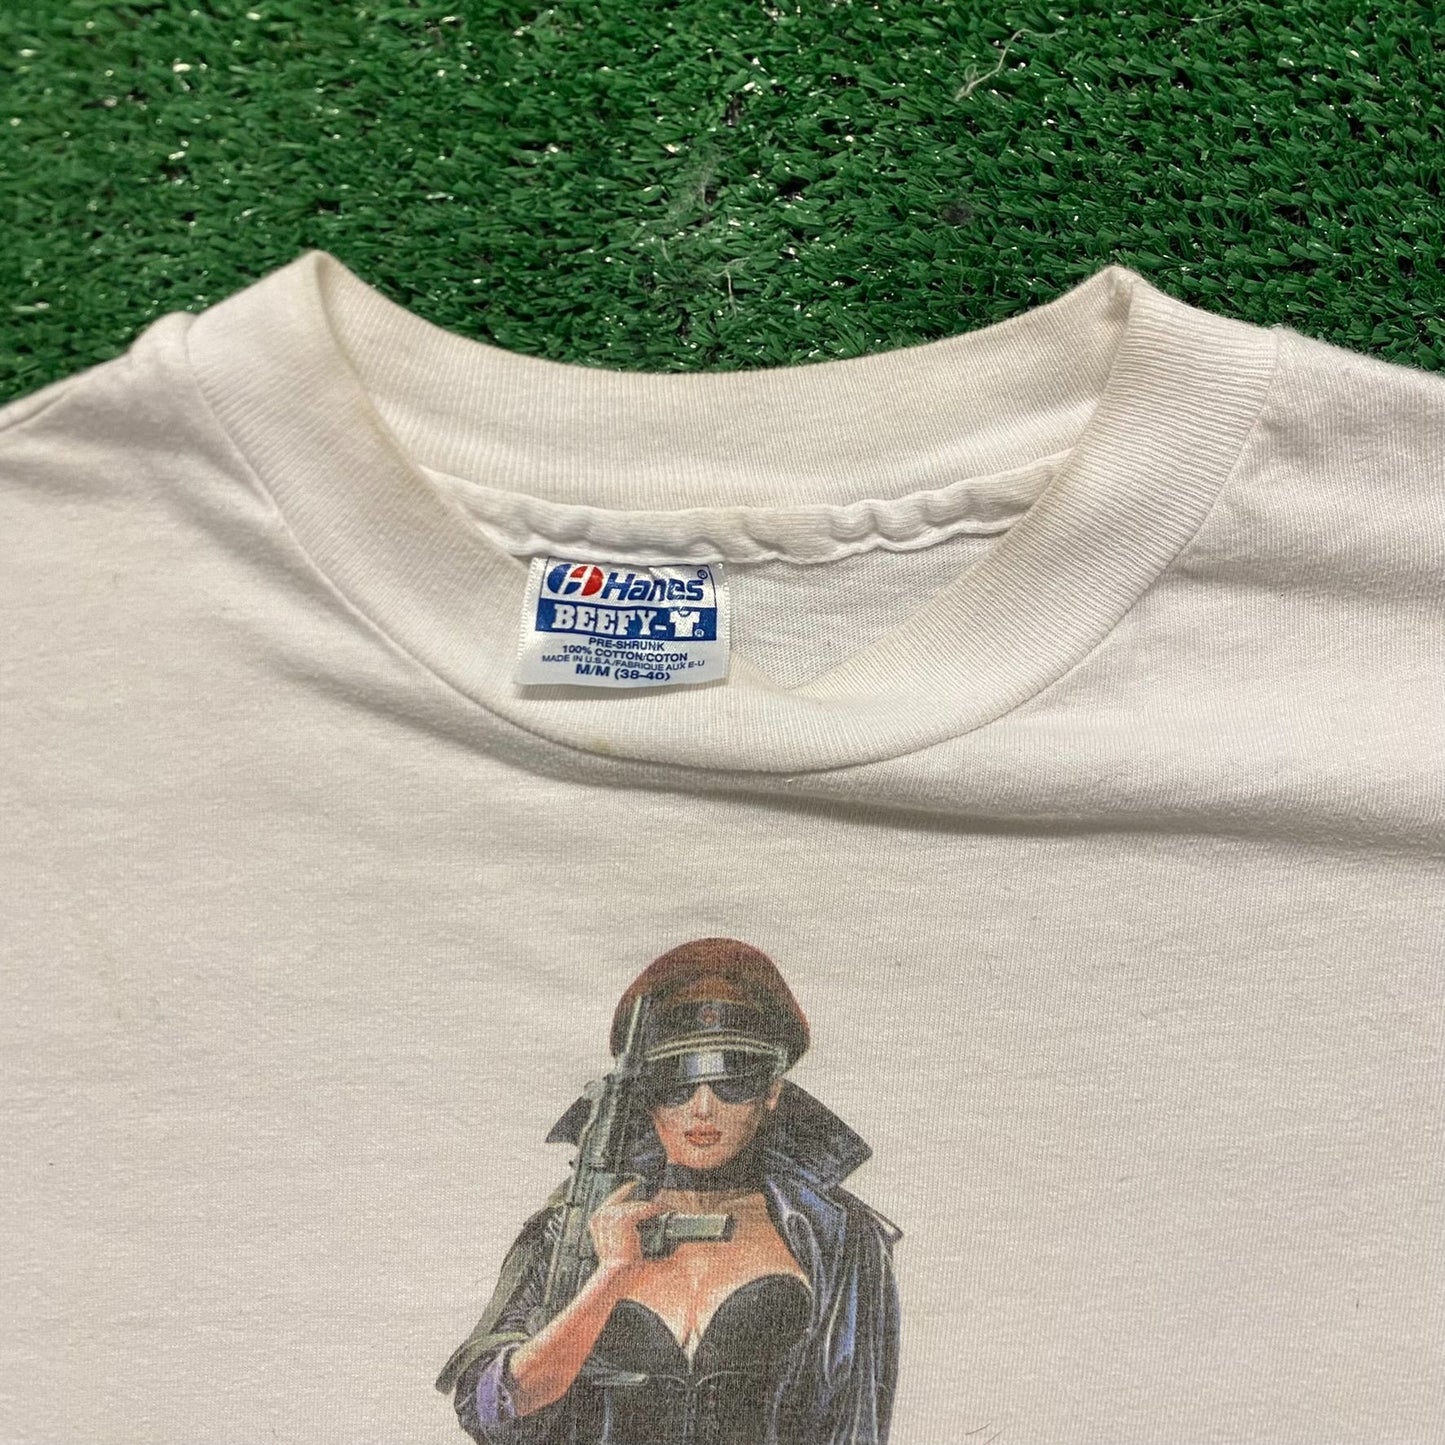 Model Soldier Vintage 90s Punk Bondage T-Shirt